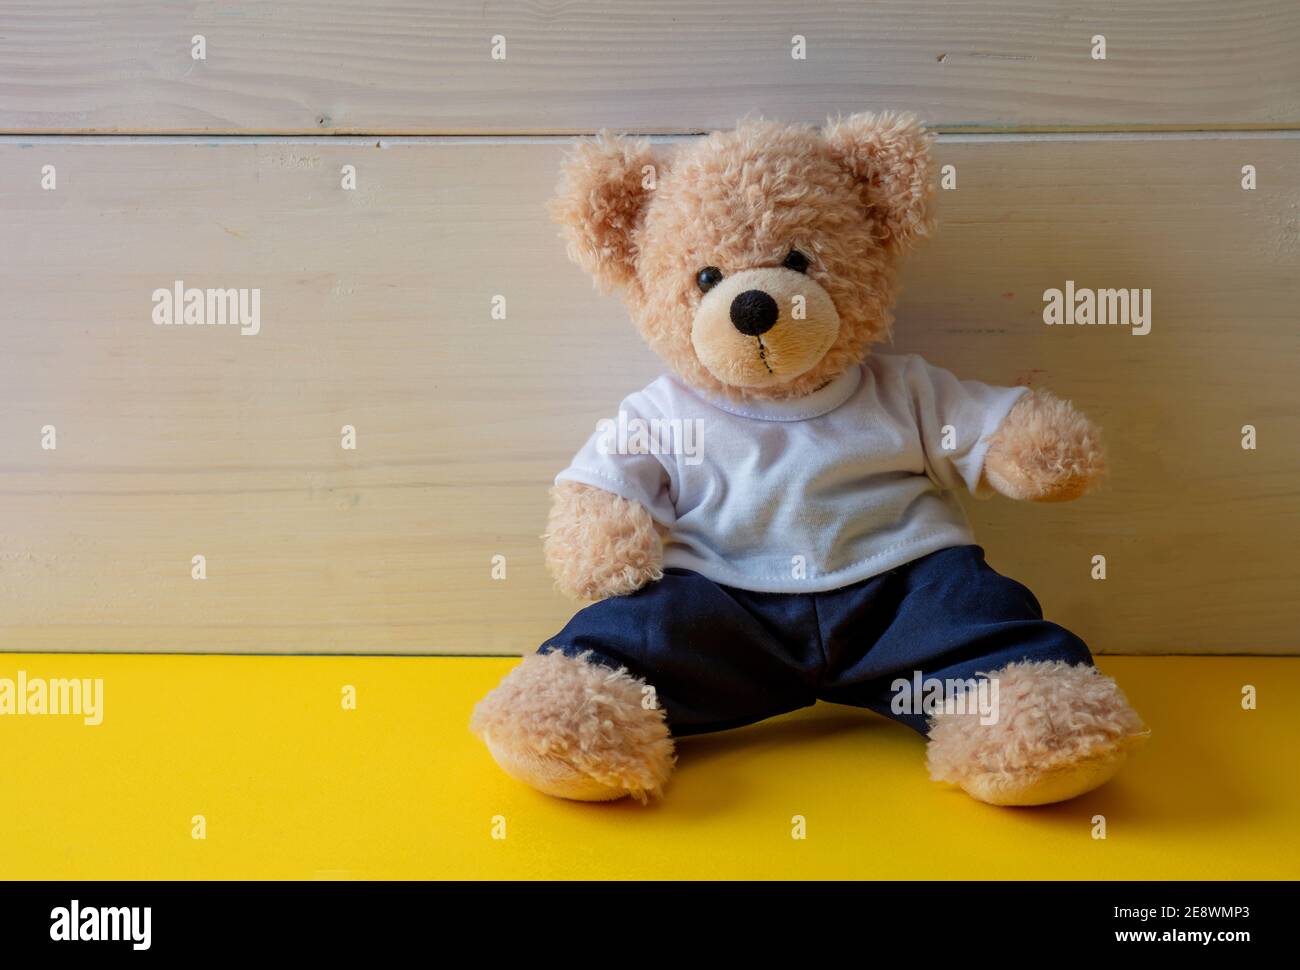 Teddybär sitzt in einem leeren Raum, gelber Boden, weißer Holzwandhintergrund, Kind allein trägt weißes T-Shirt im Kinderzimmer Stockfoto